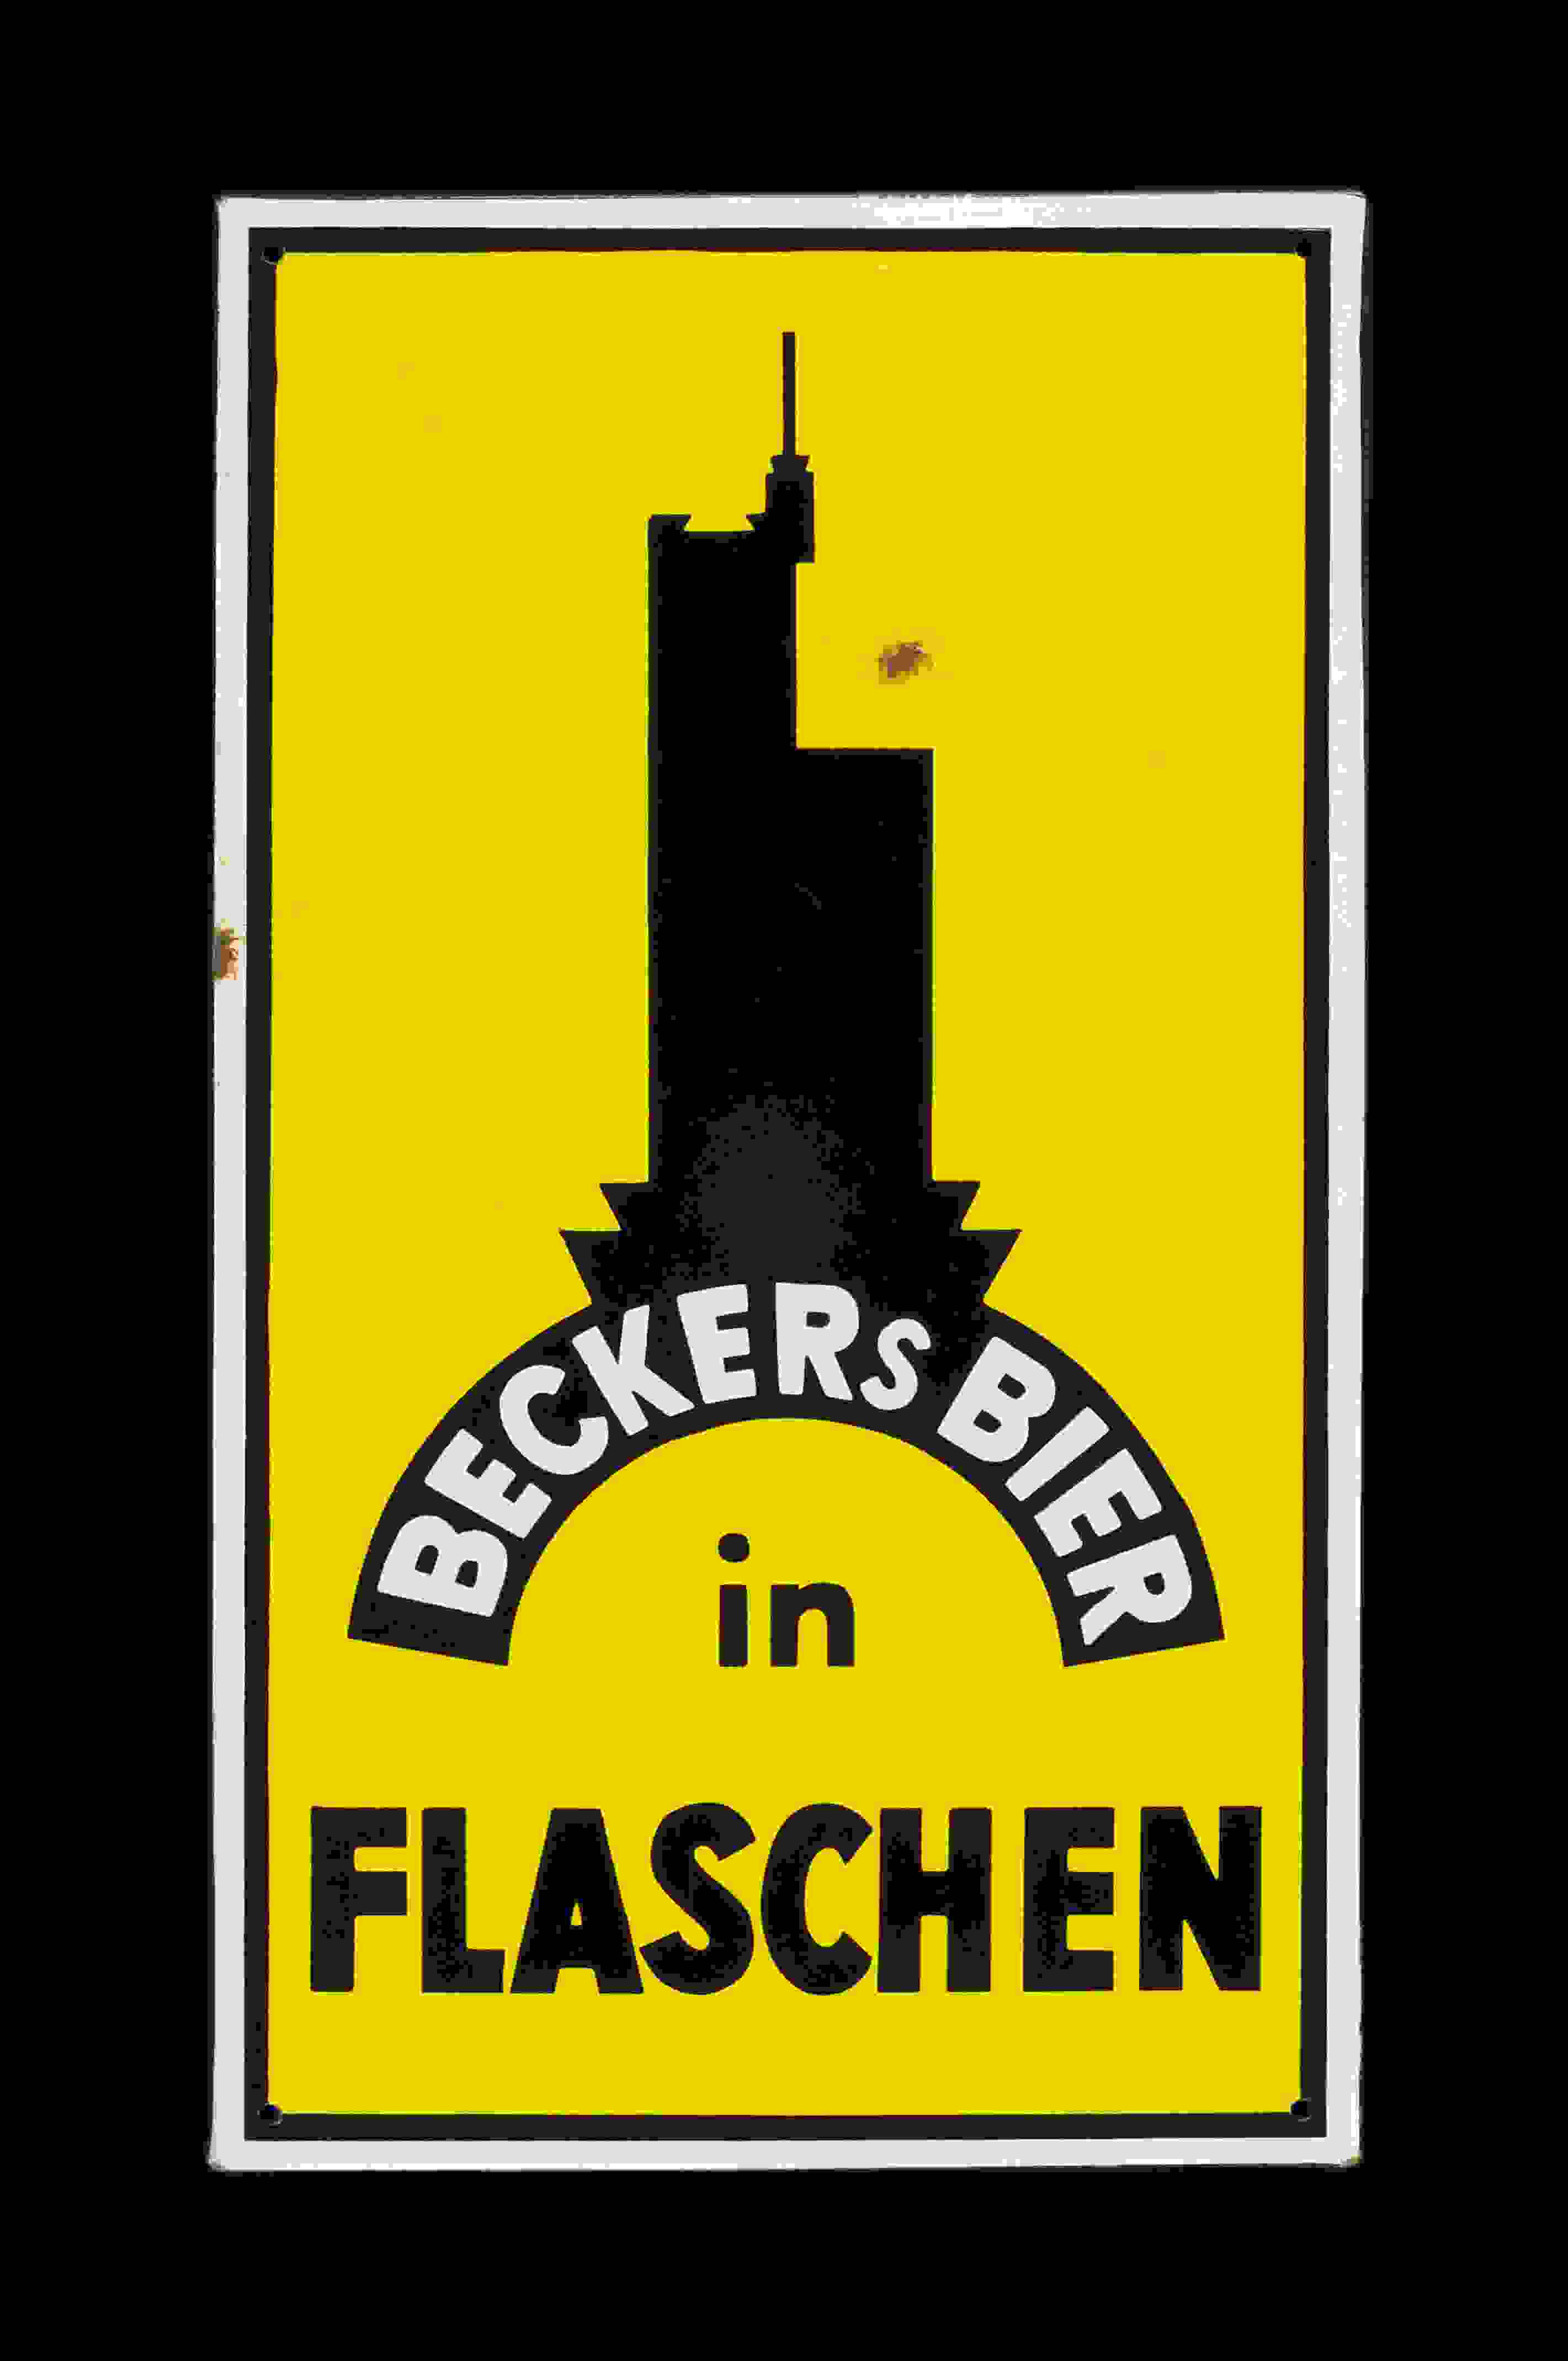 Becker's Bier in Flaschen 